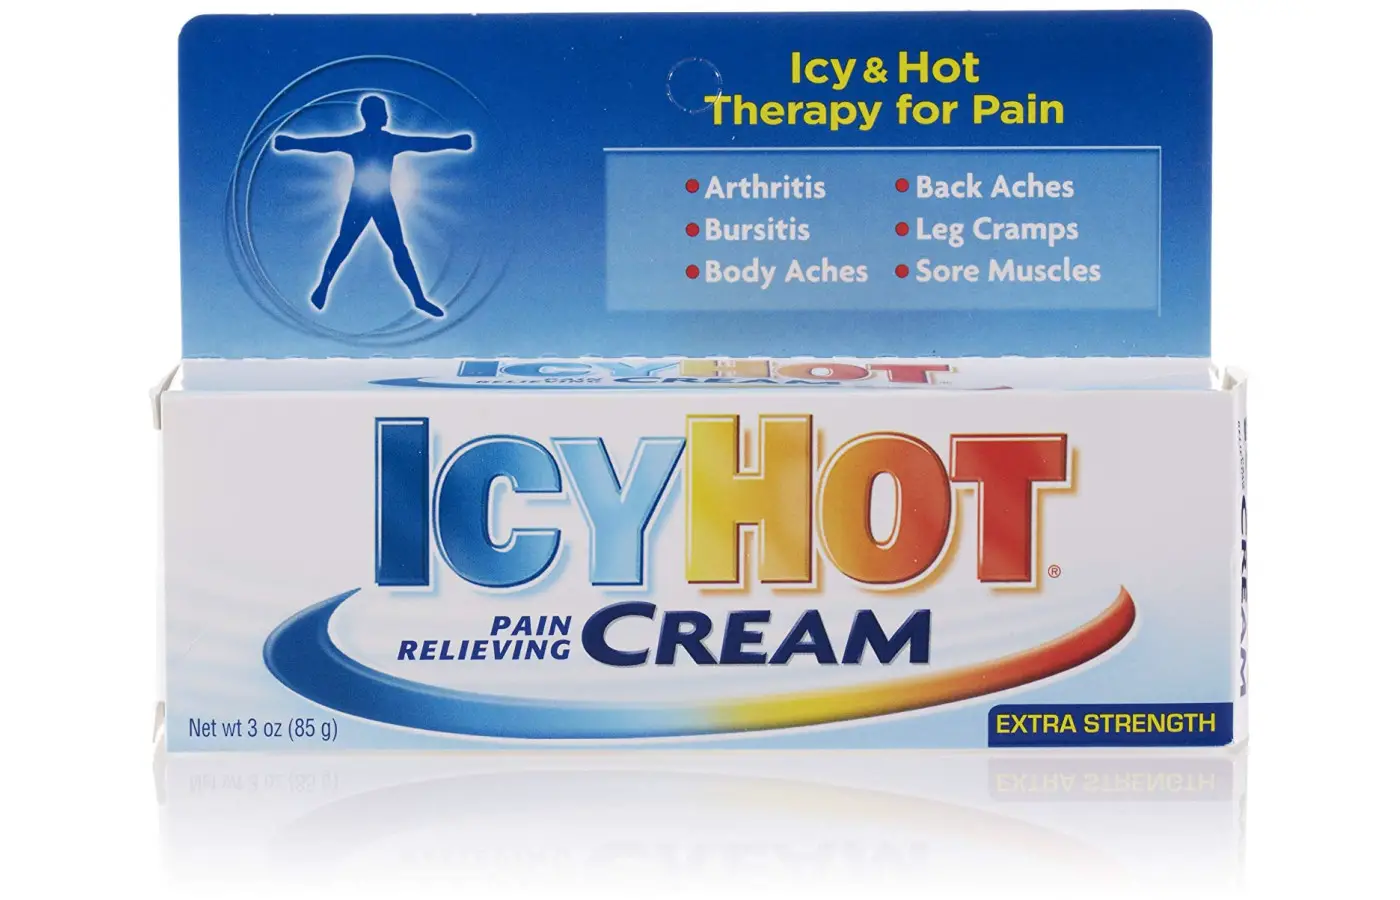 icy hot cream